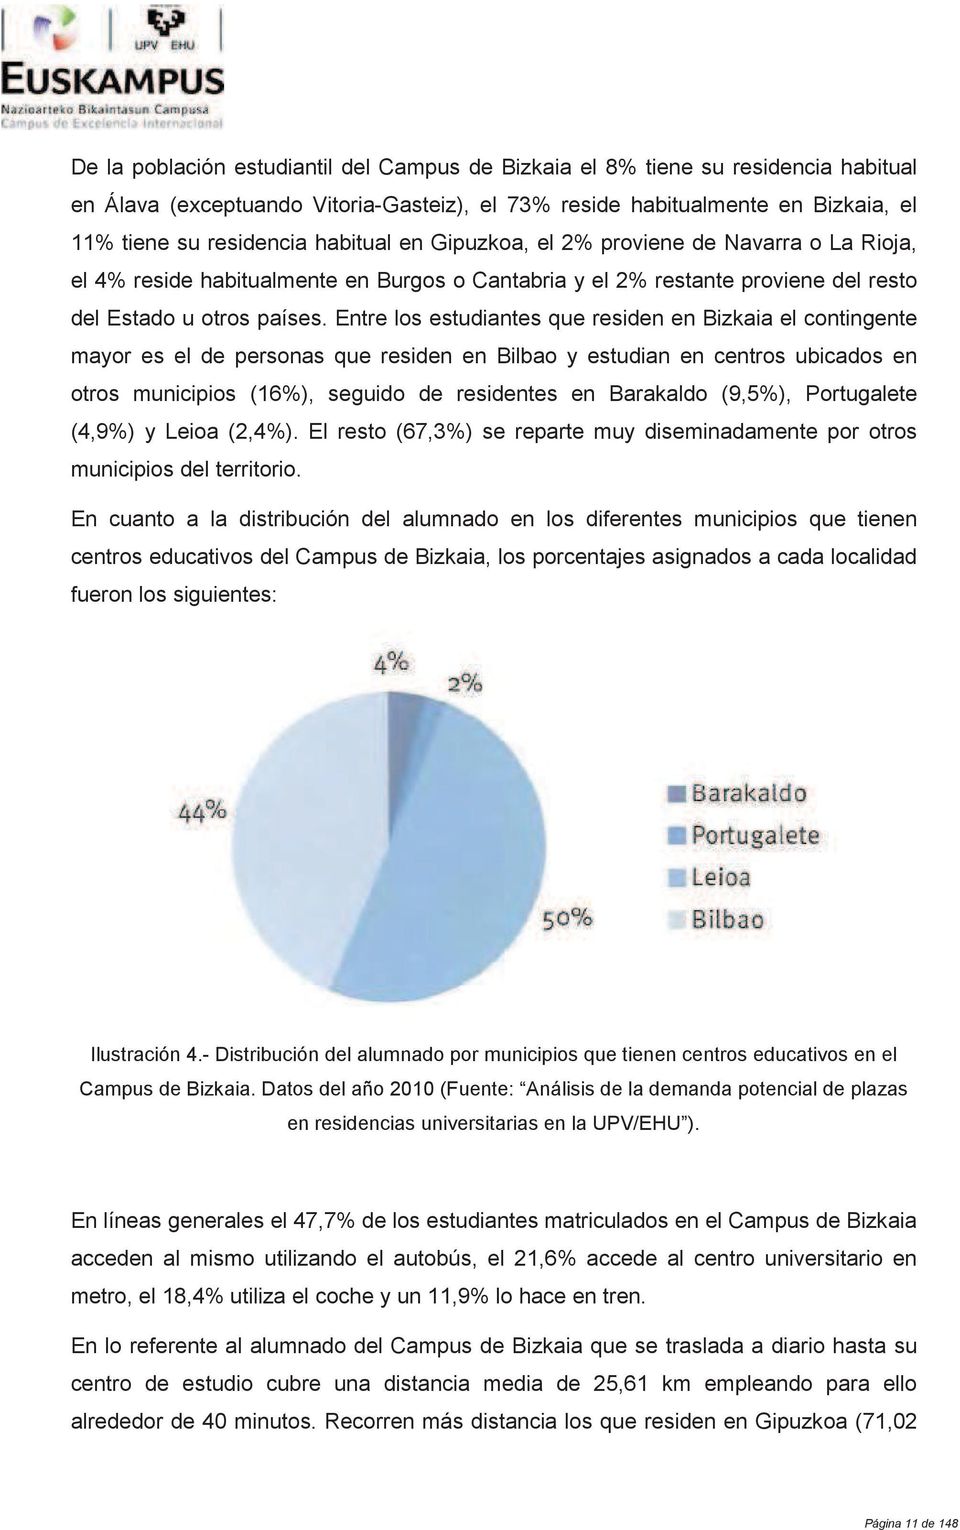 Entre los estudiantes que residen en Bizkaia el contingente mayor es el de personas que residen en Bilbao y estudian en centros ubicados en otros municipios (16%), seguido de residentes en Barakaldo